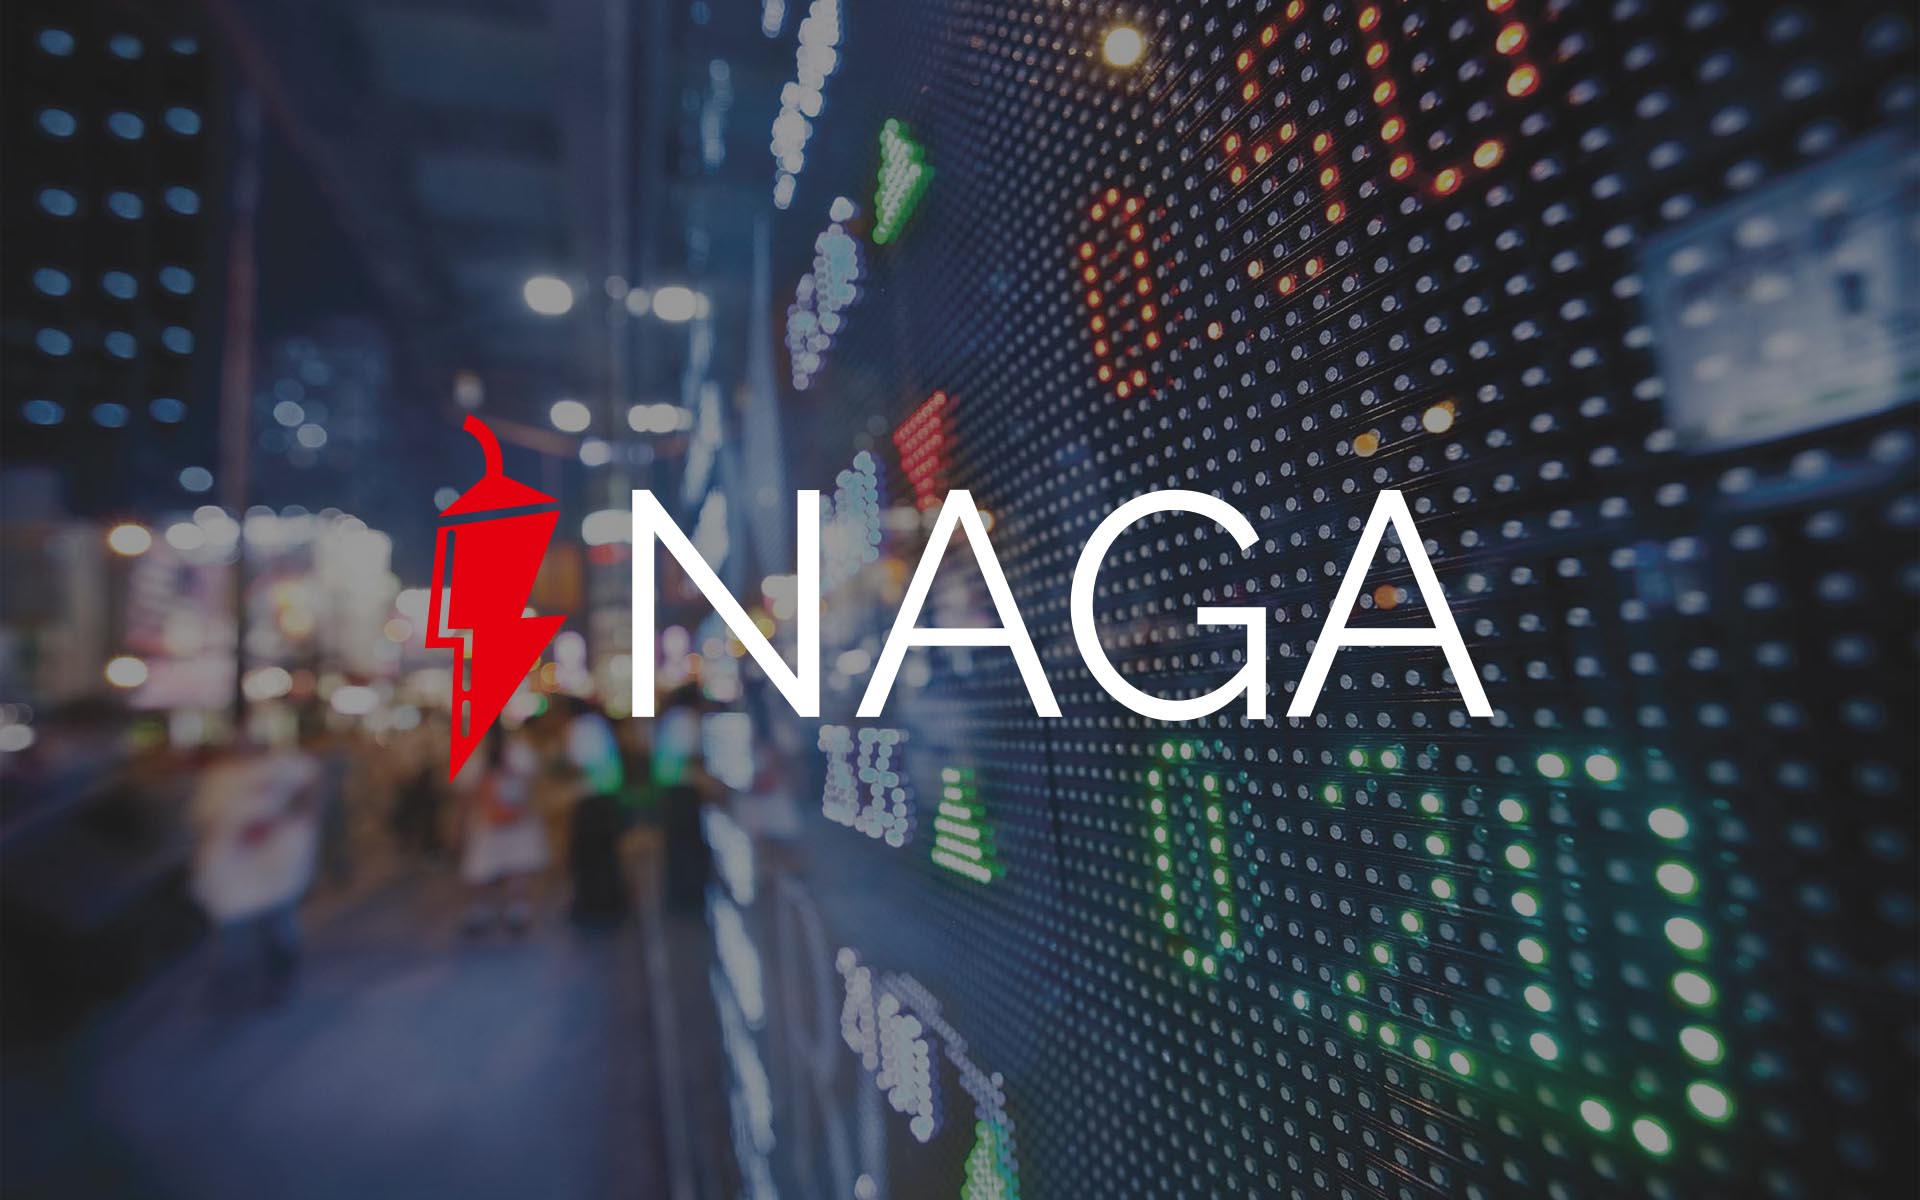 مجموعة NAGA تحول خسارة قدرها 4.2 مليون يورو إلى أرباح بنفس القيمة مع ارتفاع الودائع لأول مرة بنسبة 100%